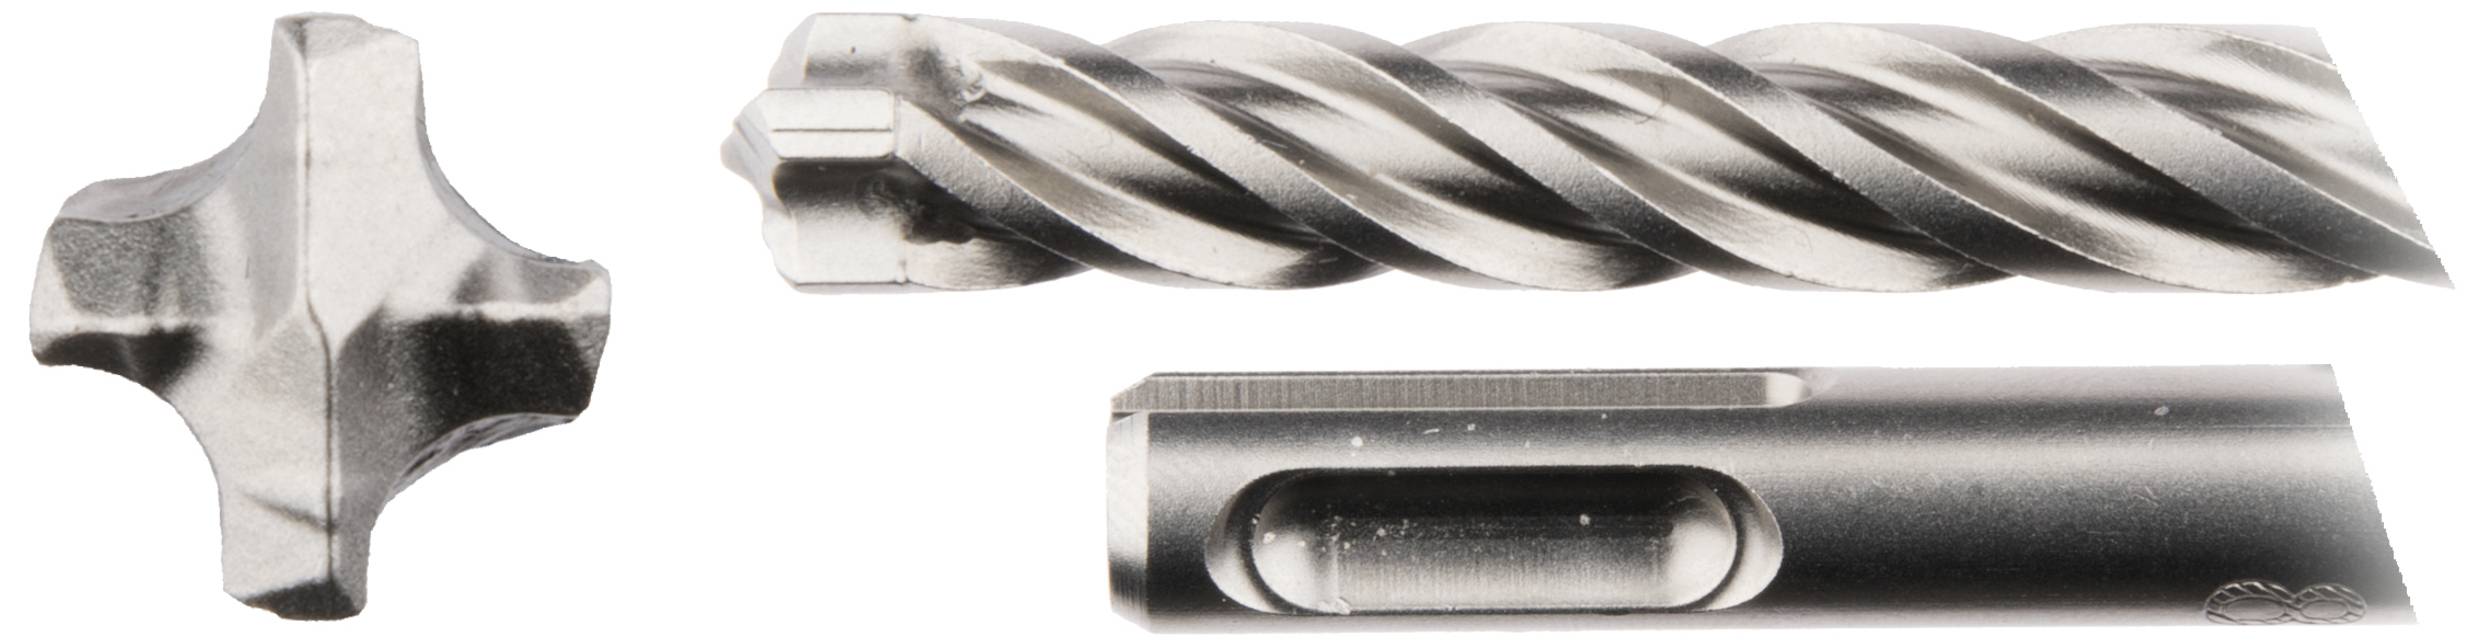 MAKITA Stein-Spiralbohrer 6 mm NEMESIS 2 B-57978 Gesamtlänge 165 mm 1 Stück (B-57978)